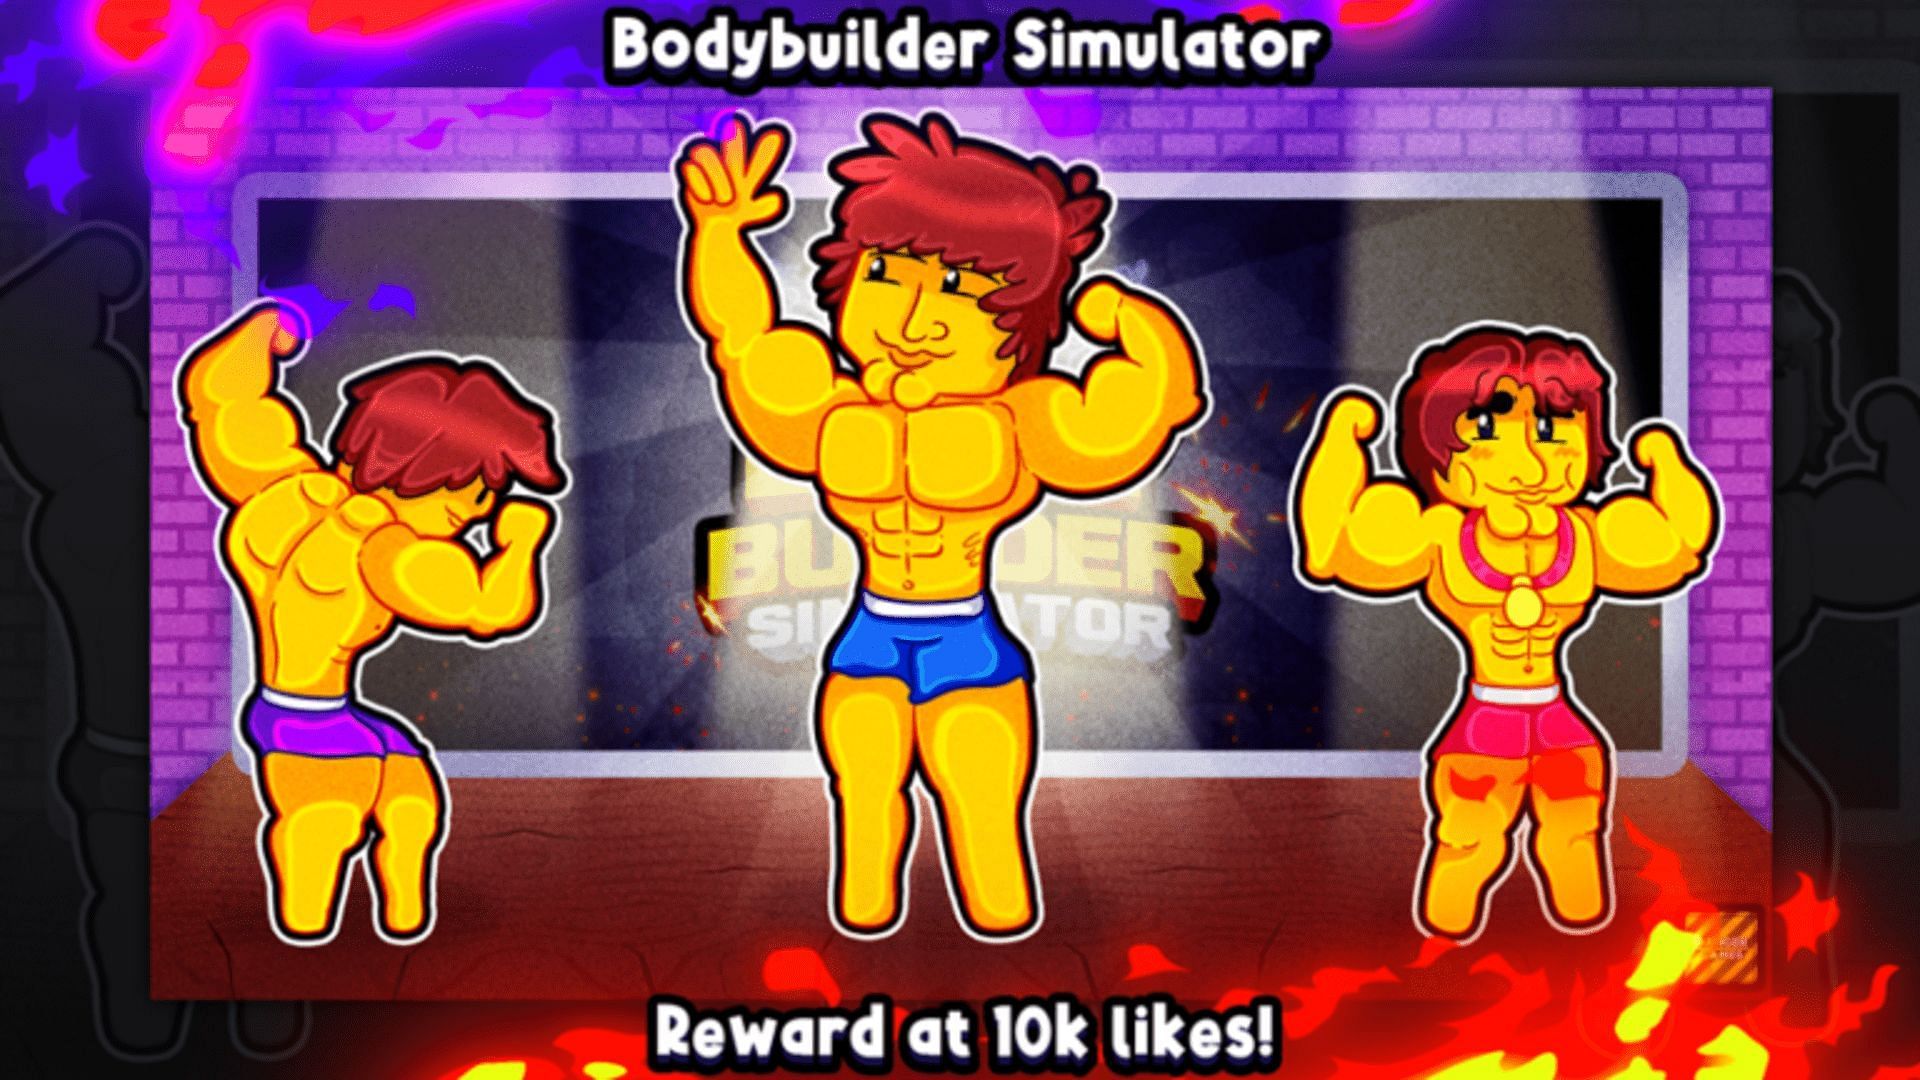 Bodybuilder Simulator codes